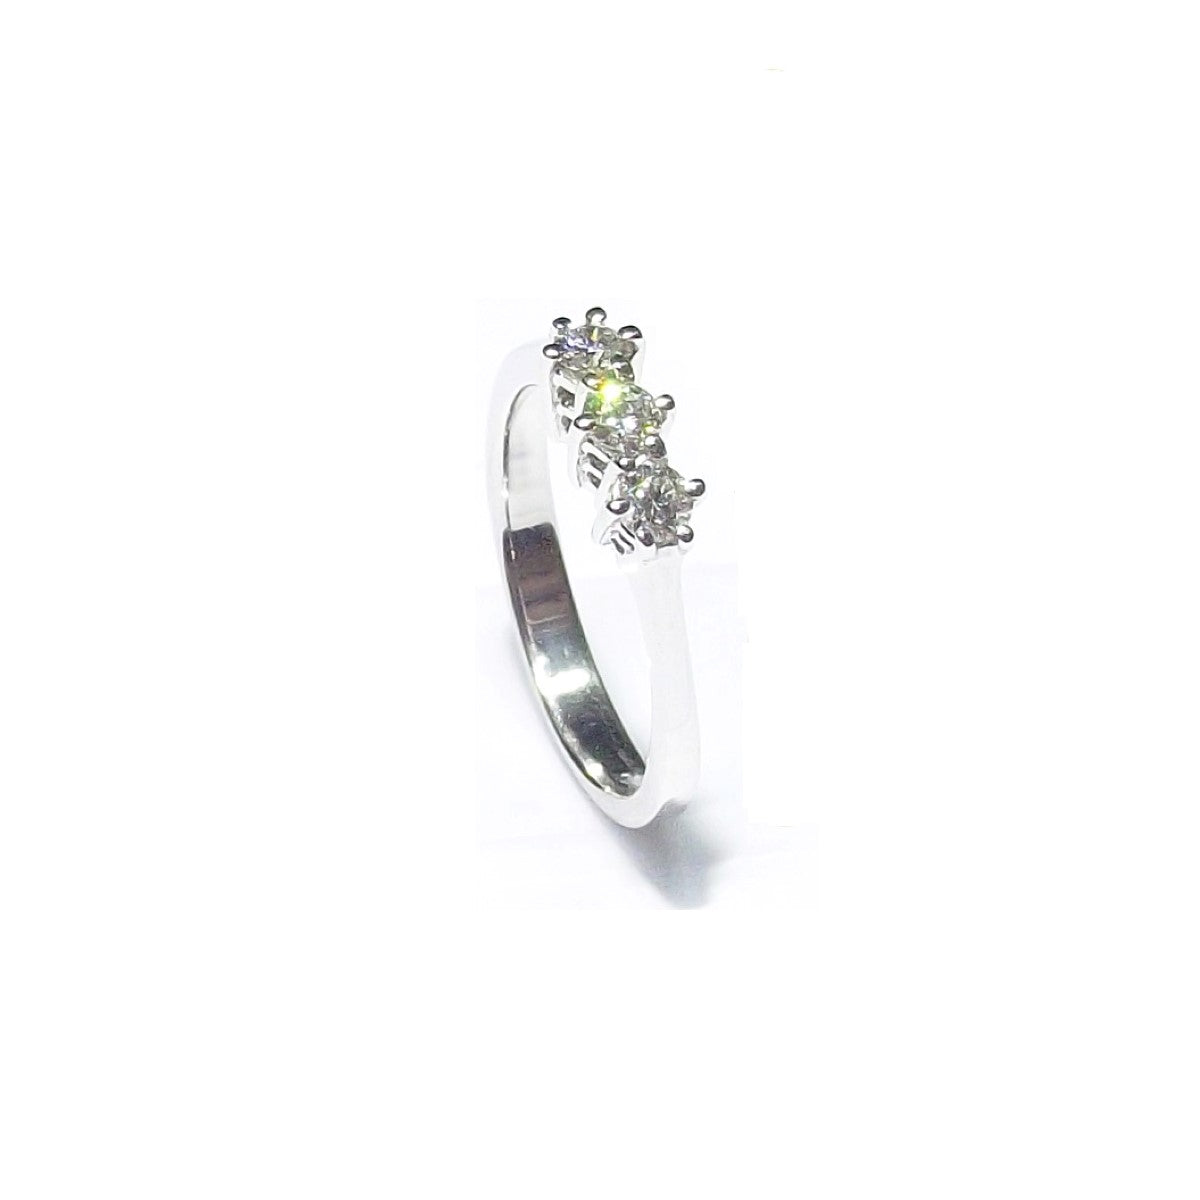 Moda G anello trilogy oro bianco 18kt 3,60g diamanti 0,29ct colore G purezza VS 0012FT - Gioielleria Capodagli